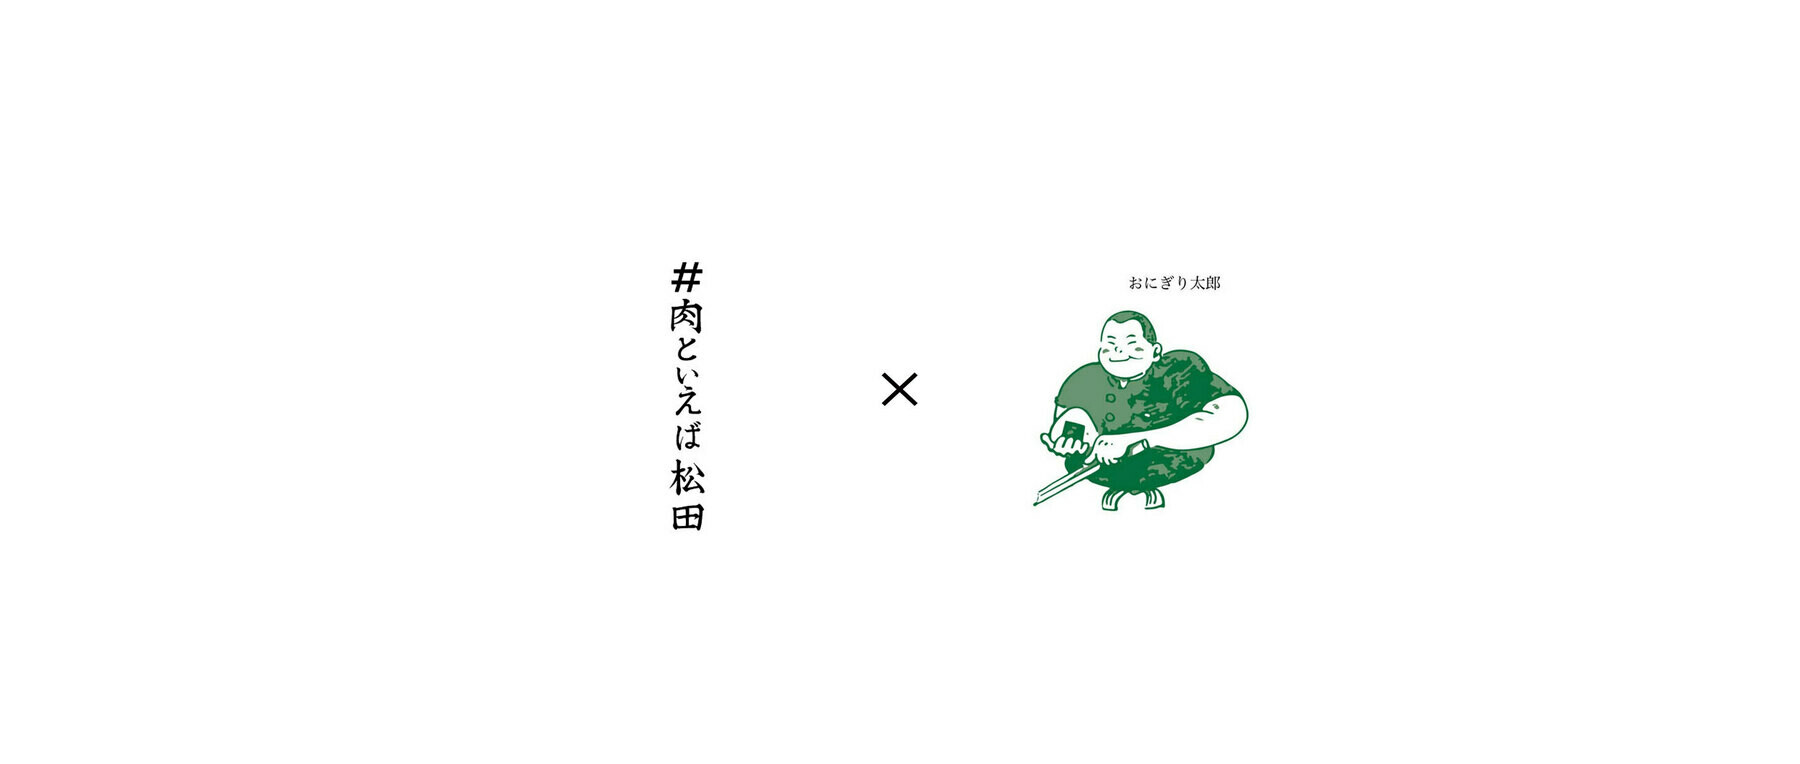 【受付終了】#肉といえば松田×おにぎり太郎のカバー画像